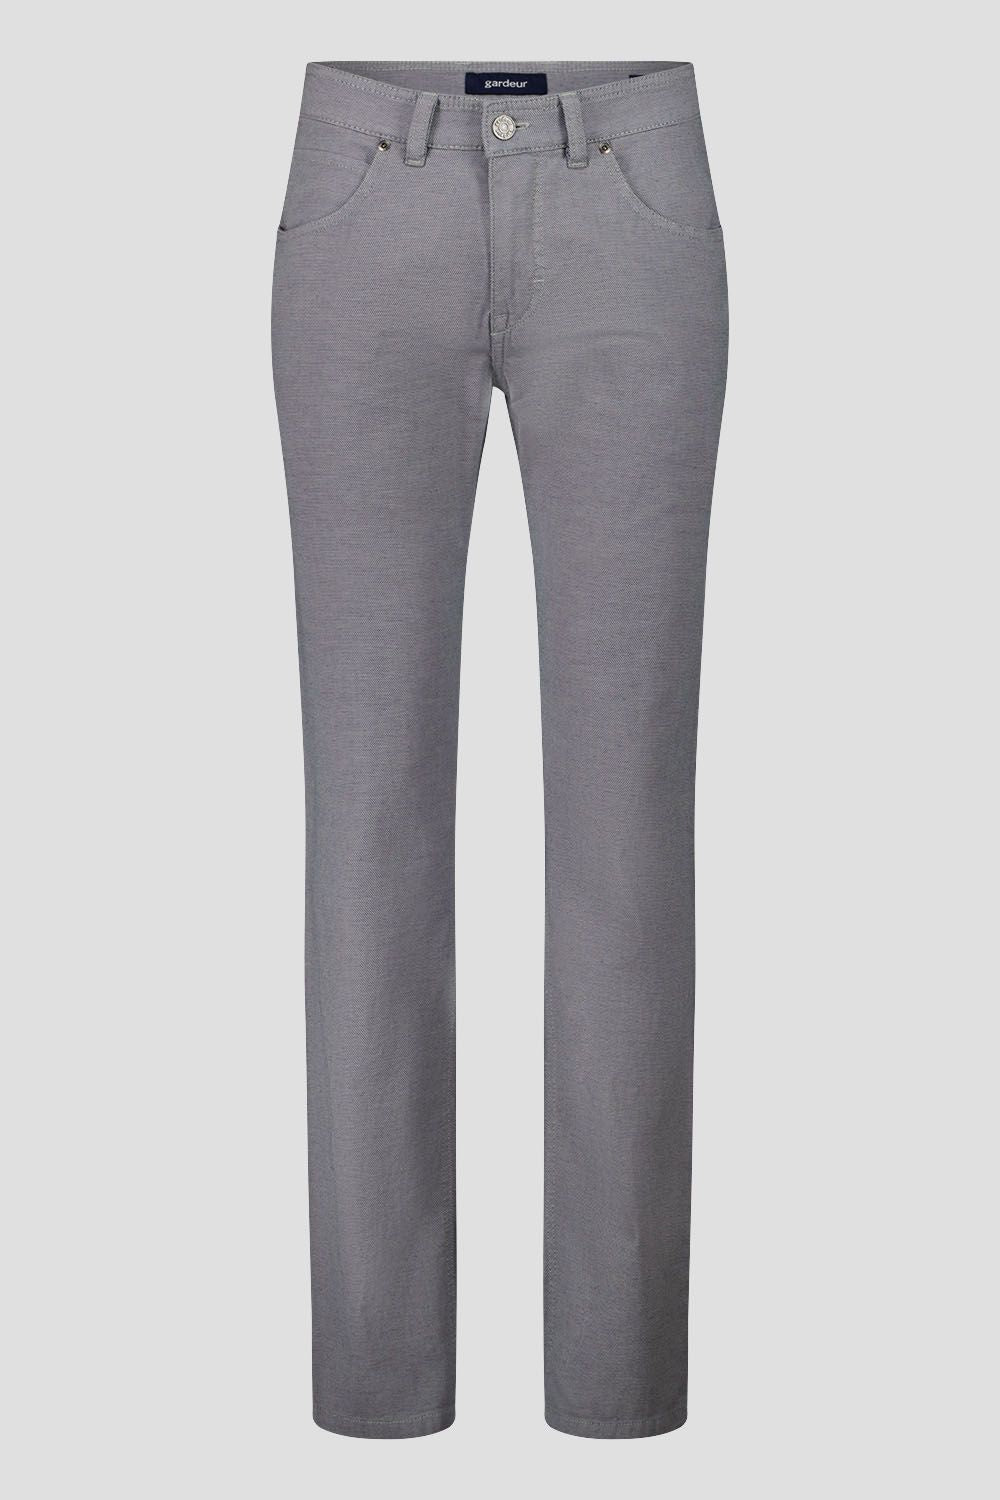 Gardeur Ewoolution Grey Modern Fit Cotton Jean (Bill-3-412051-2065)